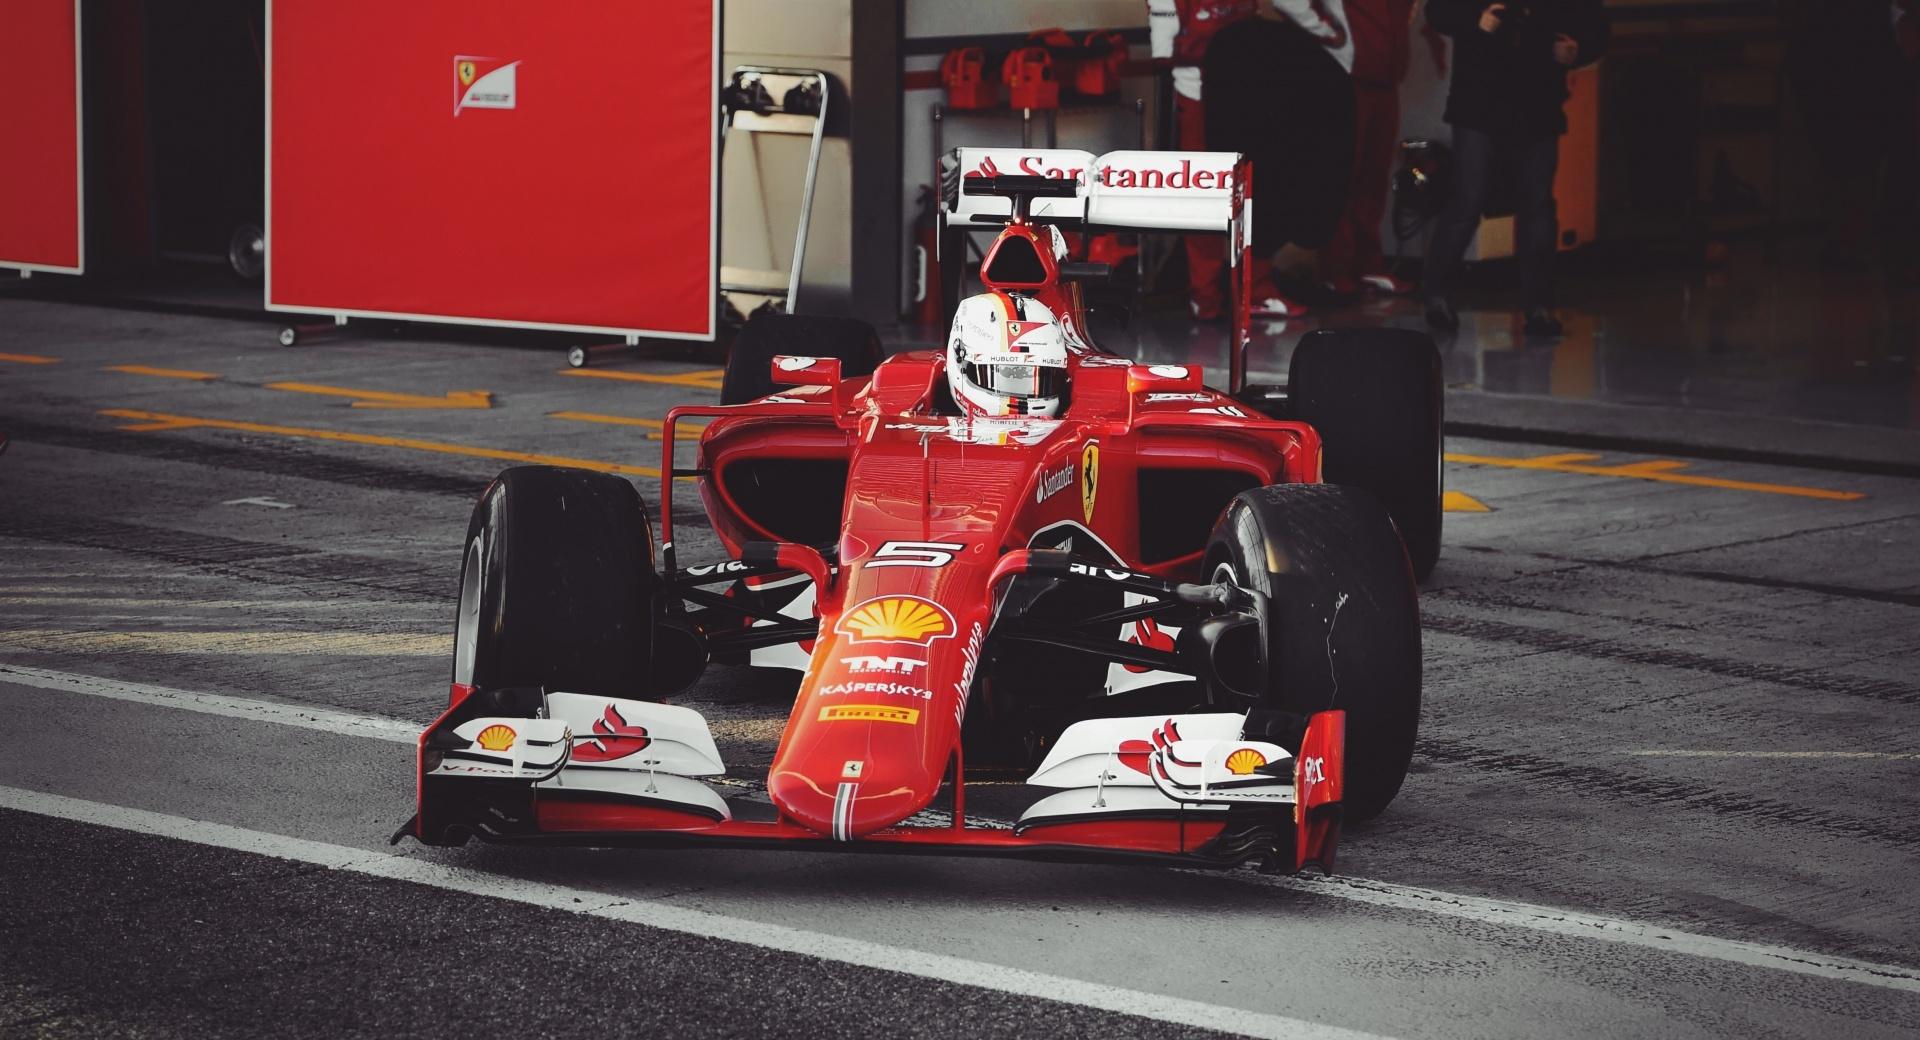 Vettel Ferrari 2015 at 1024 x 1024 iPad size wallpapers HD quality